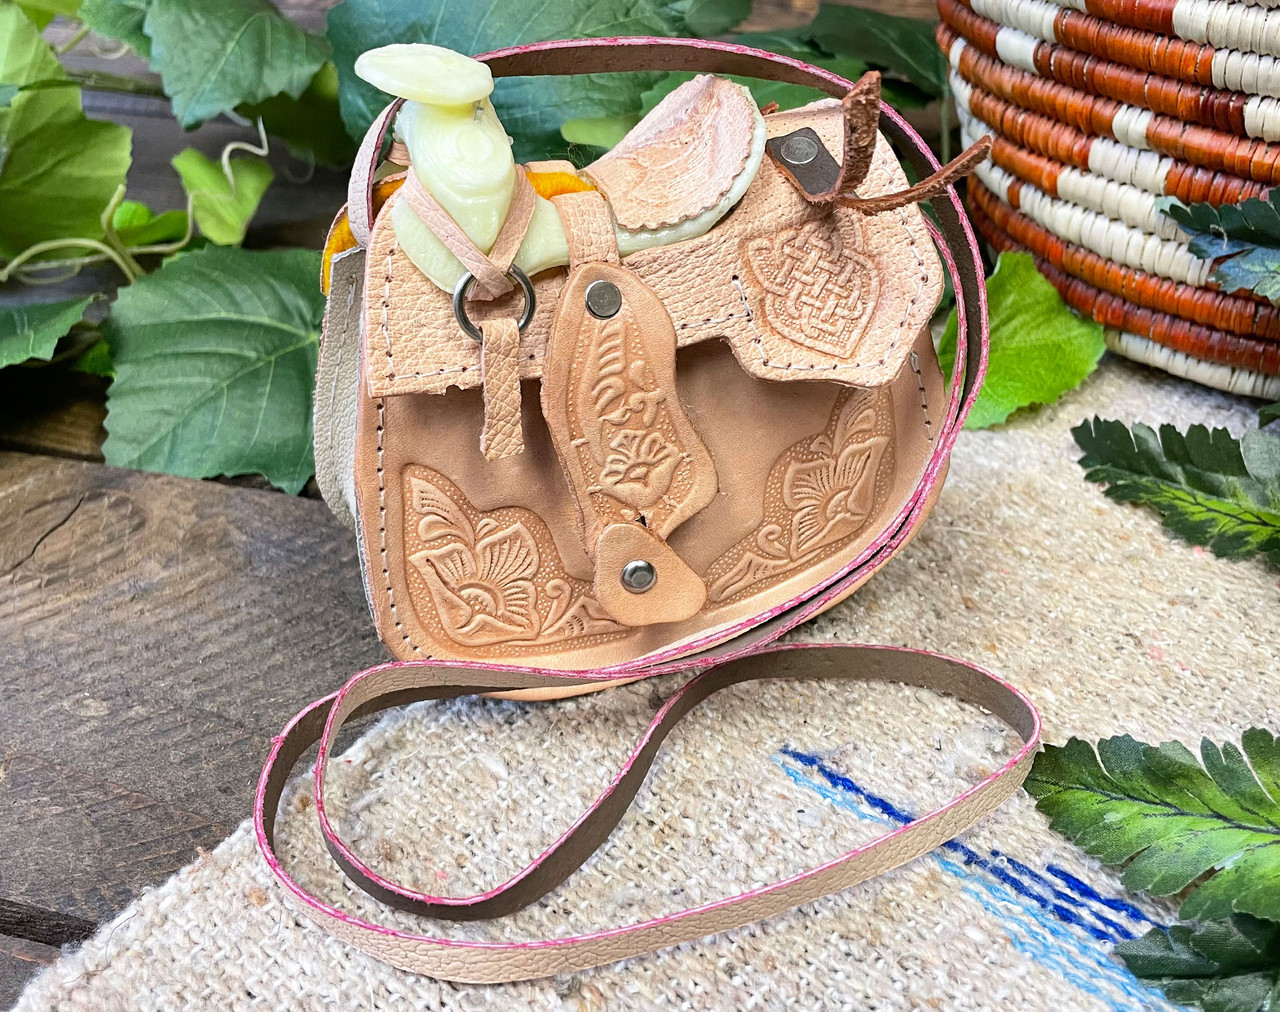 Genuine leather saddle bag gift for girls women satchel shoulder bag small  purse | eBay